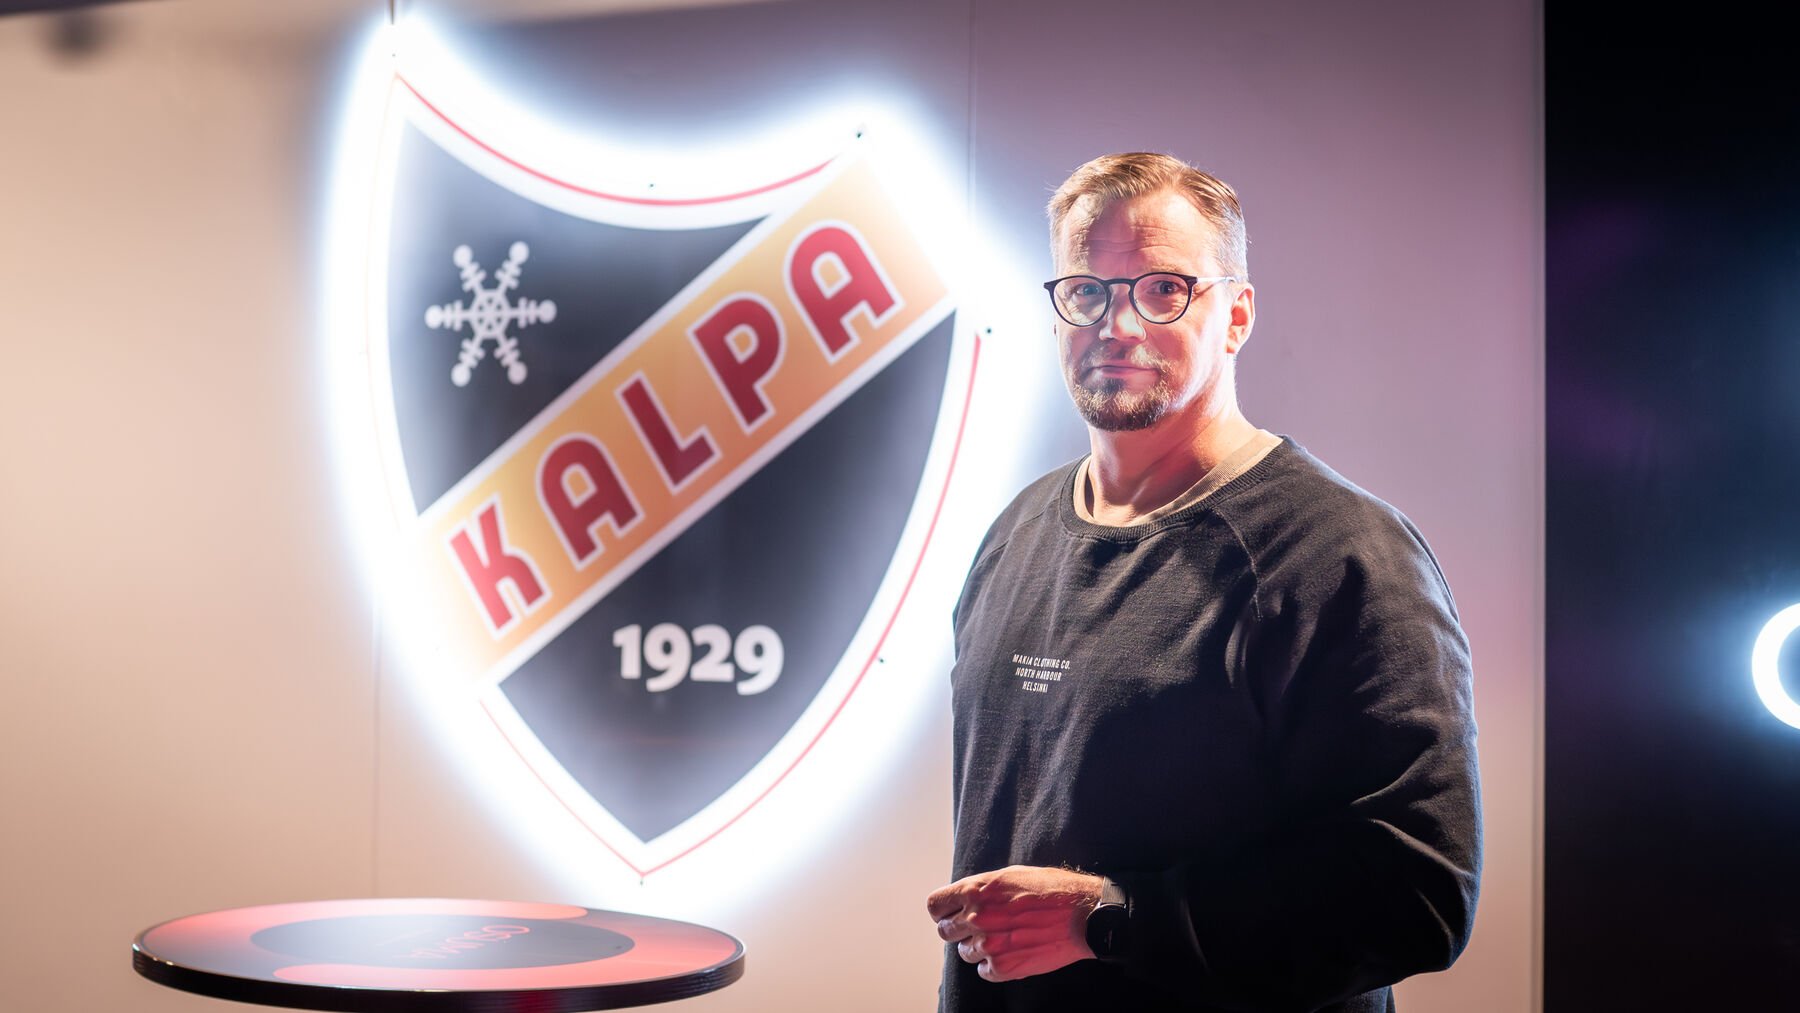 KalPa Hockeyn myyntineuvottelija Jermu Pisto on tyytyväinen Granon uudelleenbrändäämään Ousma-klubiin. 